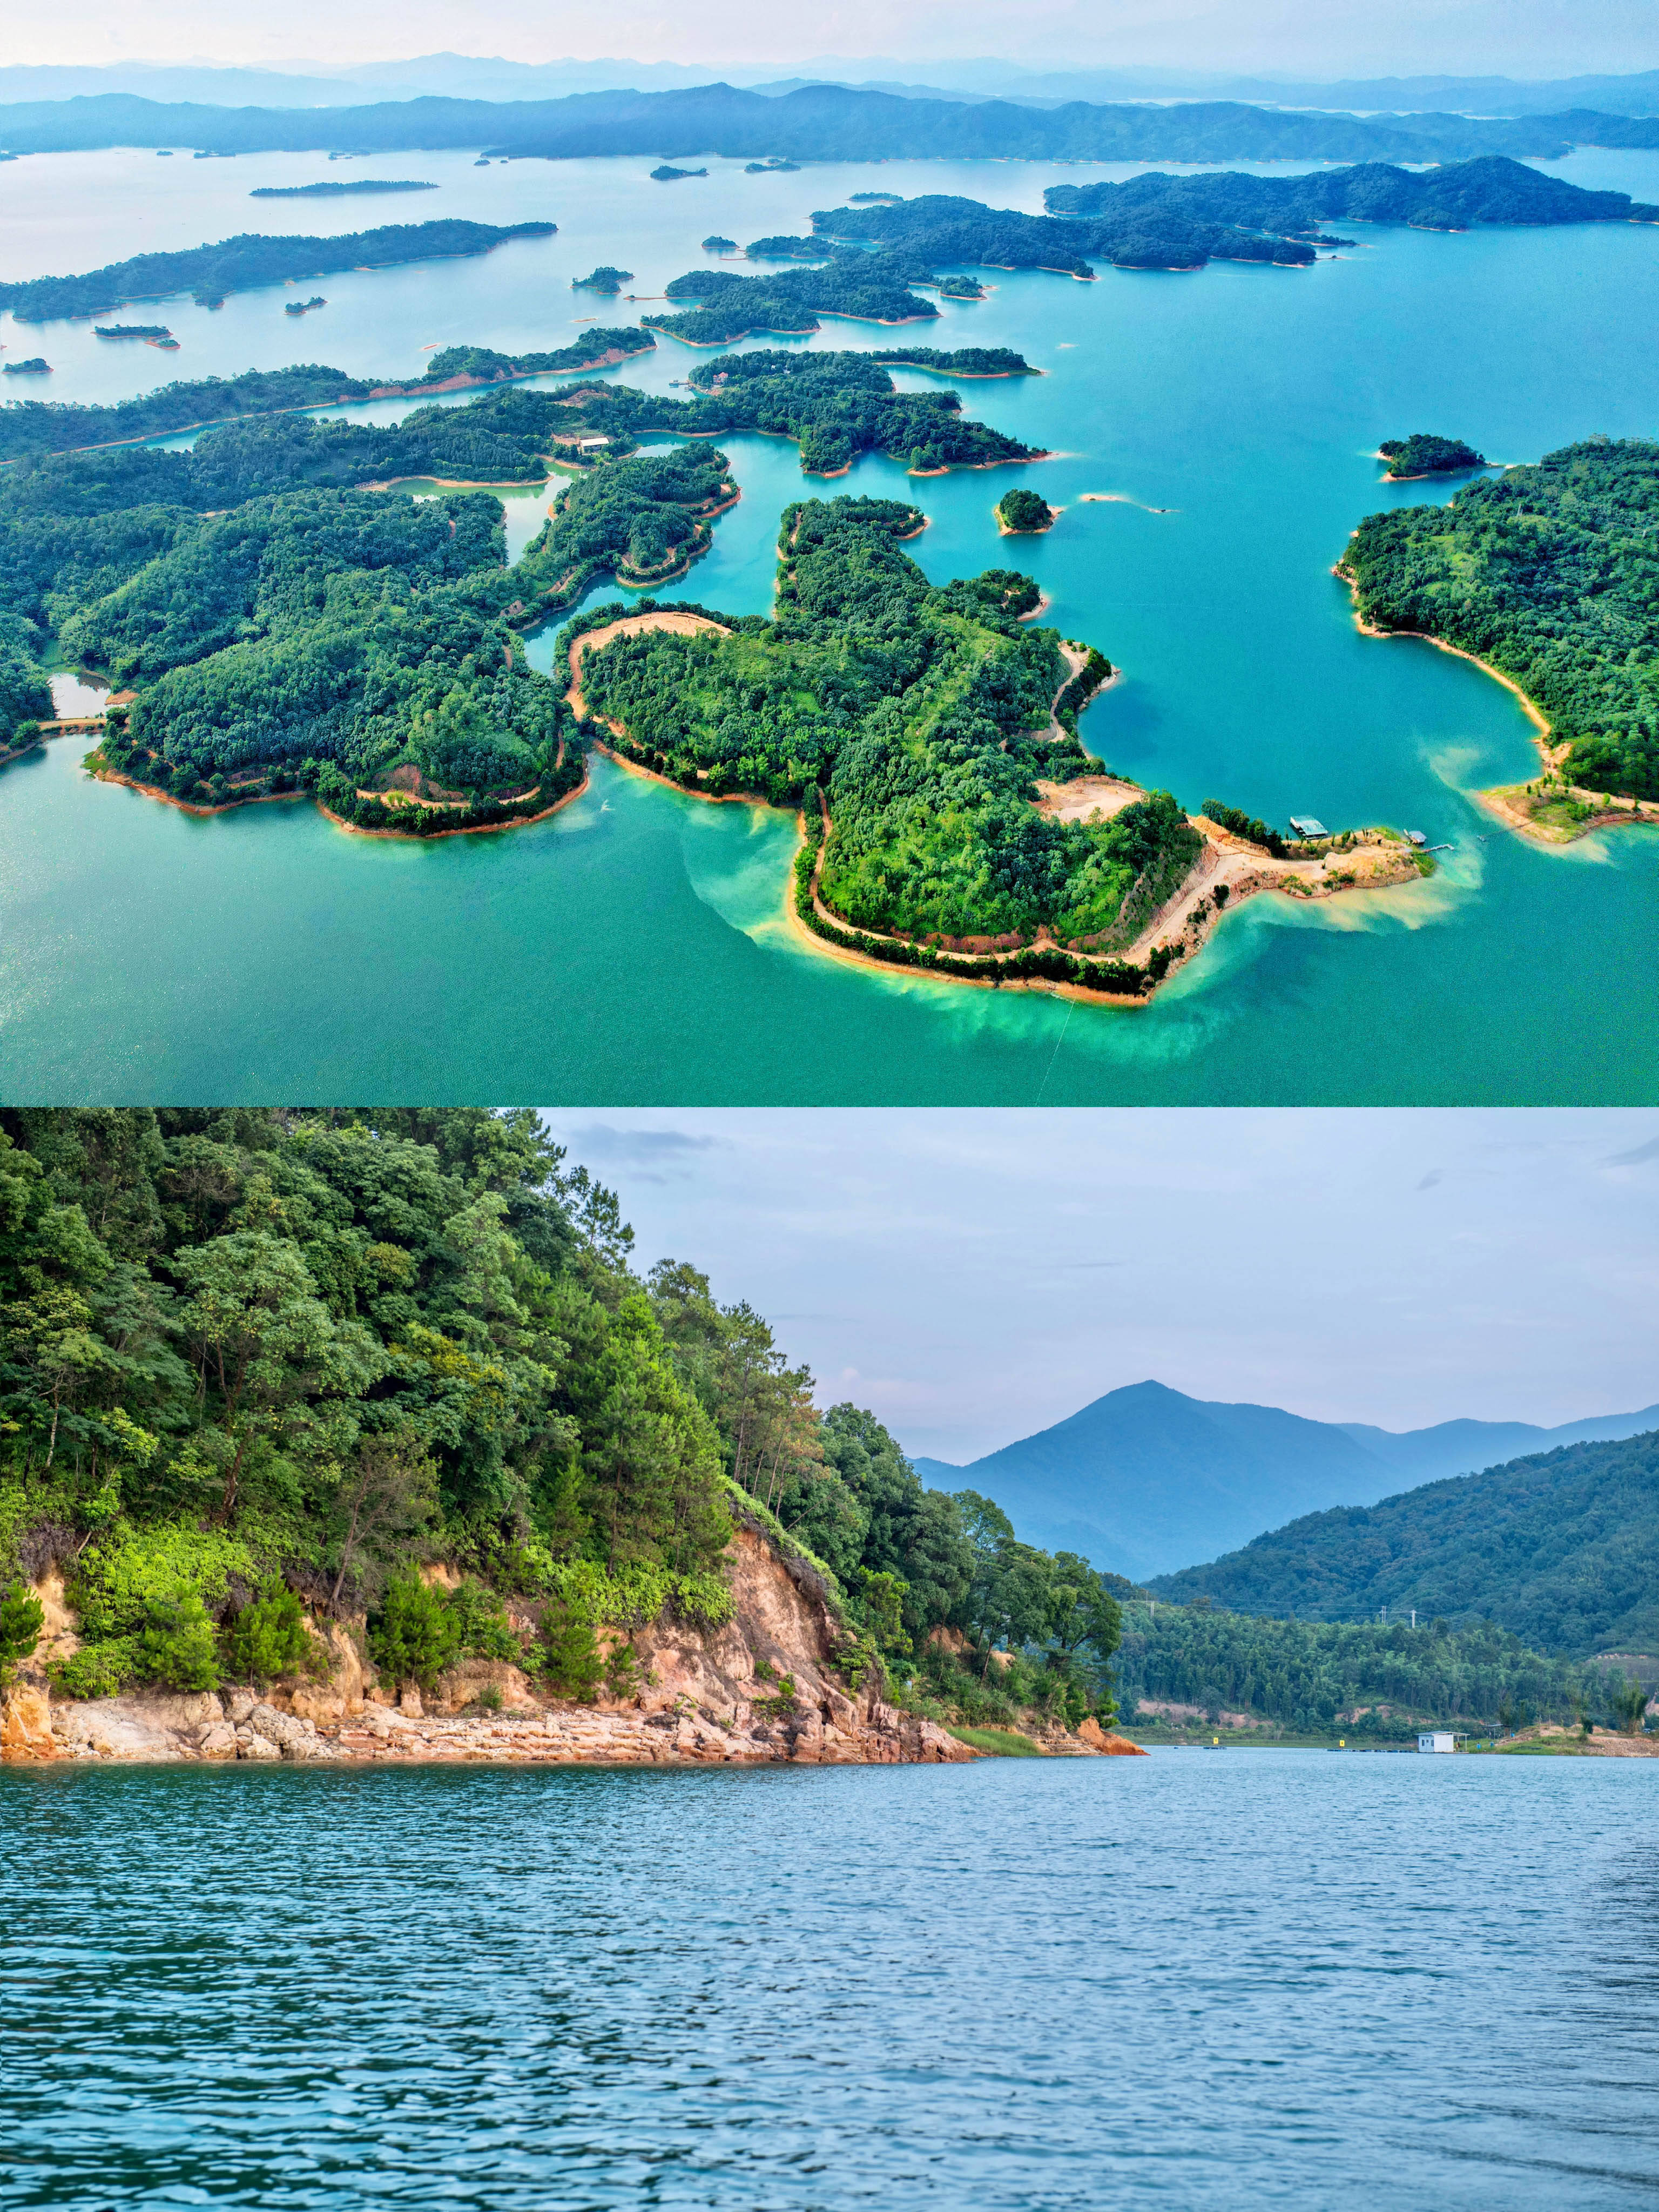 广东最美的湖泊,藏着一处绝美山谷,是亲近山水的度假秘境